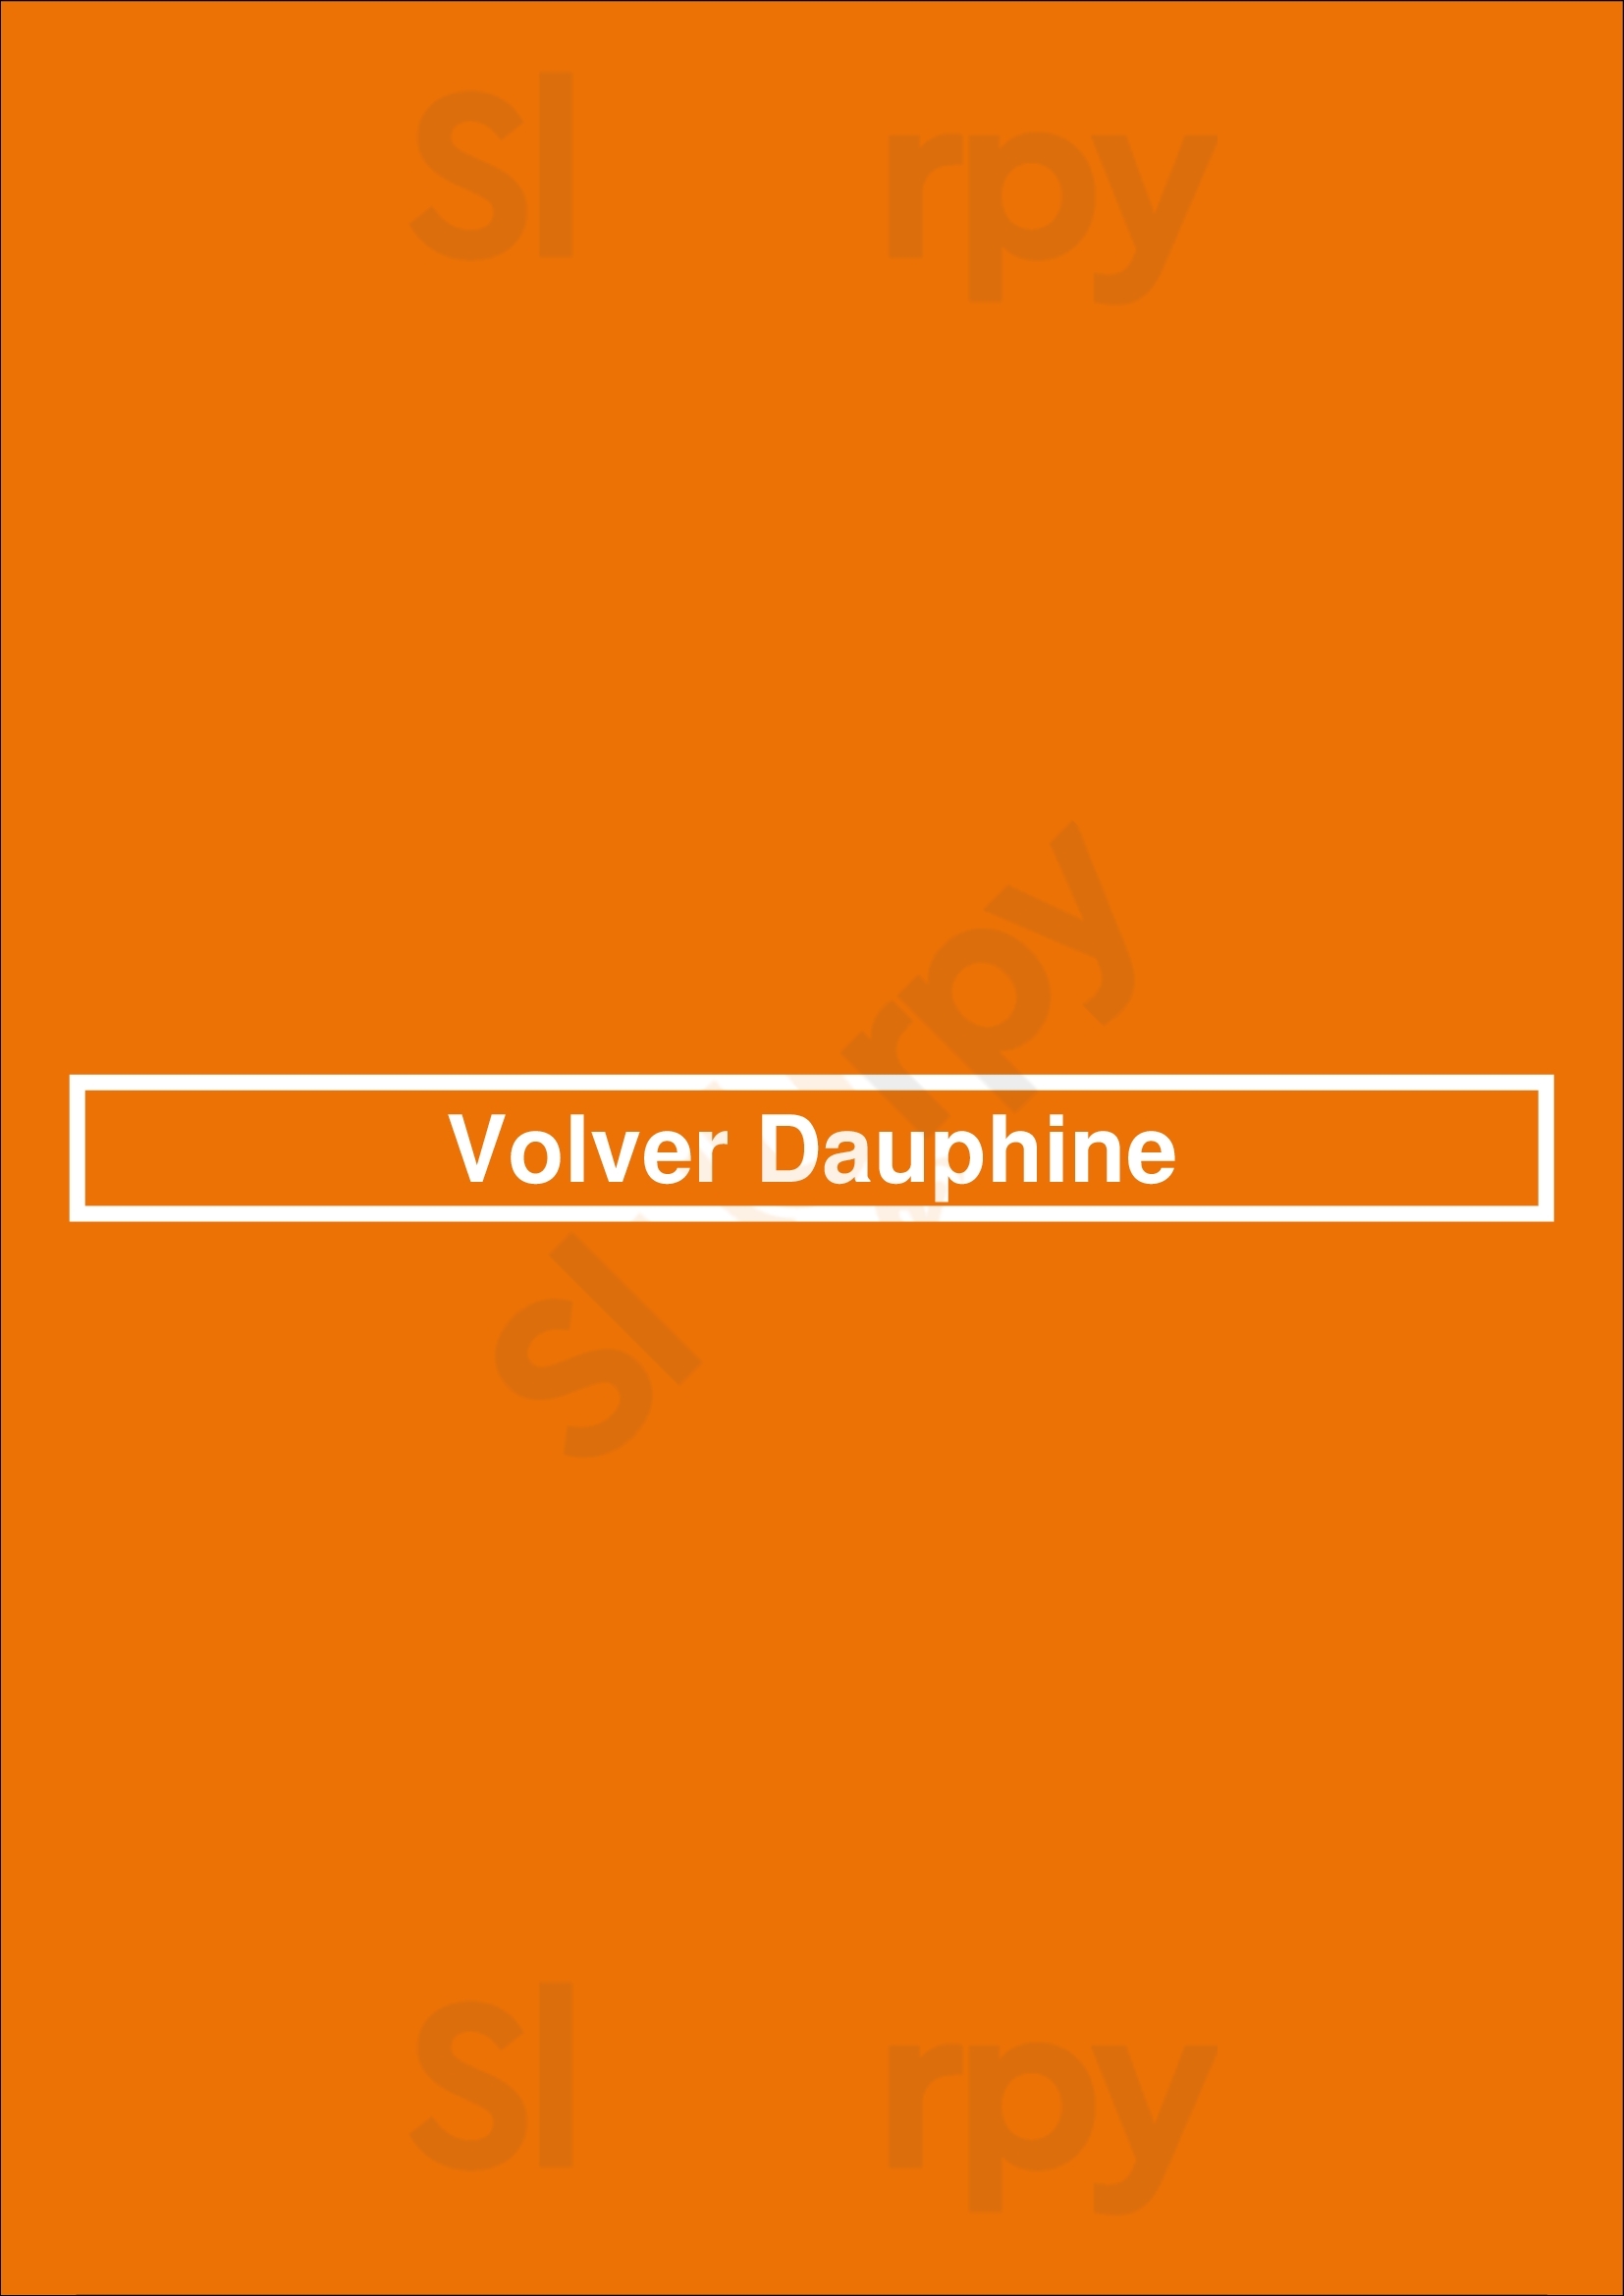 Volver Dauphine Paris Menu - 1